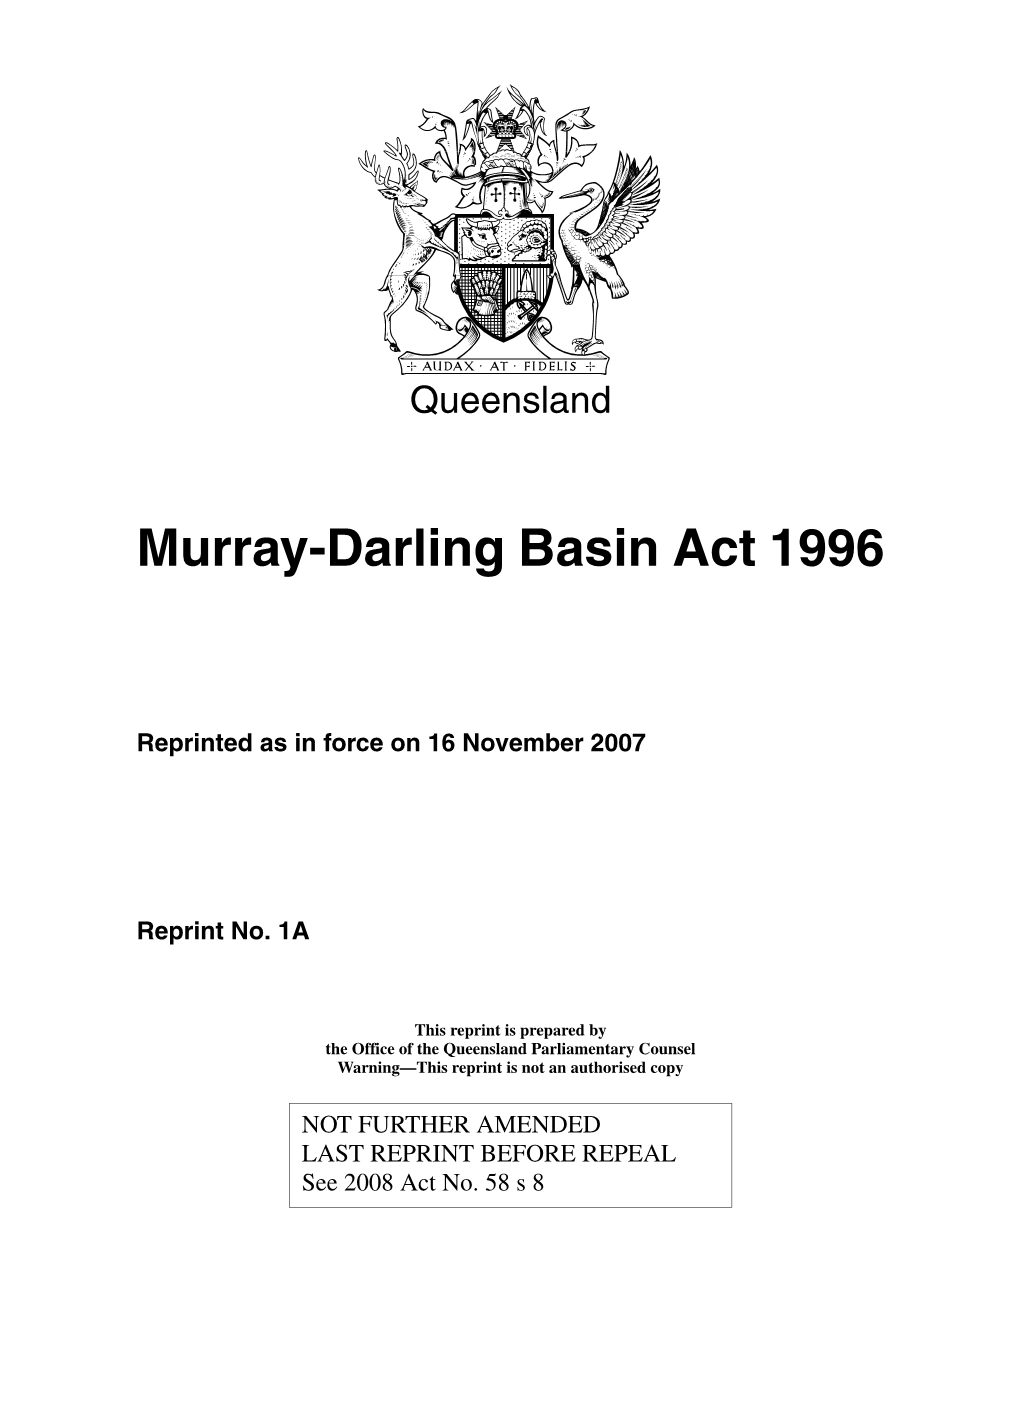 Murray-Darling Basin Act 1996